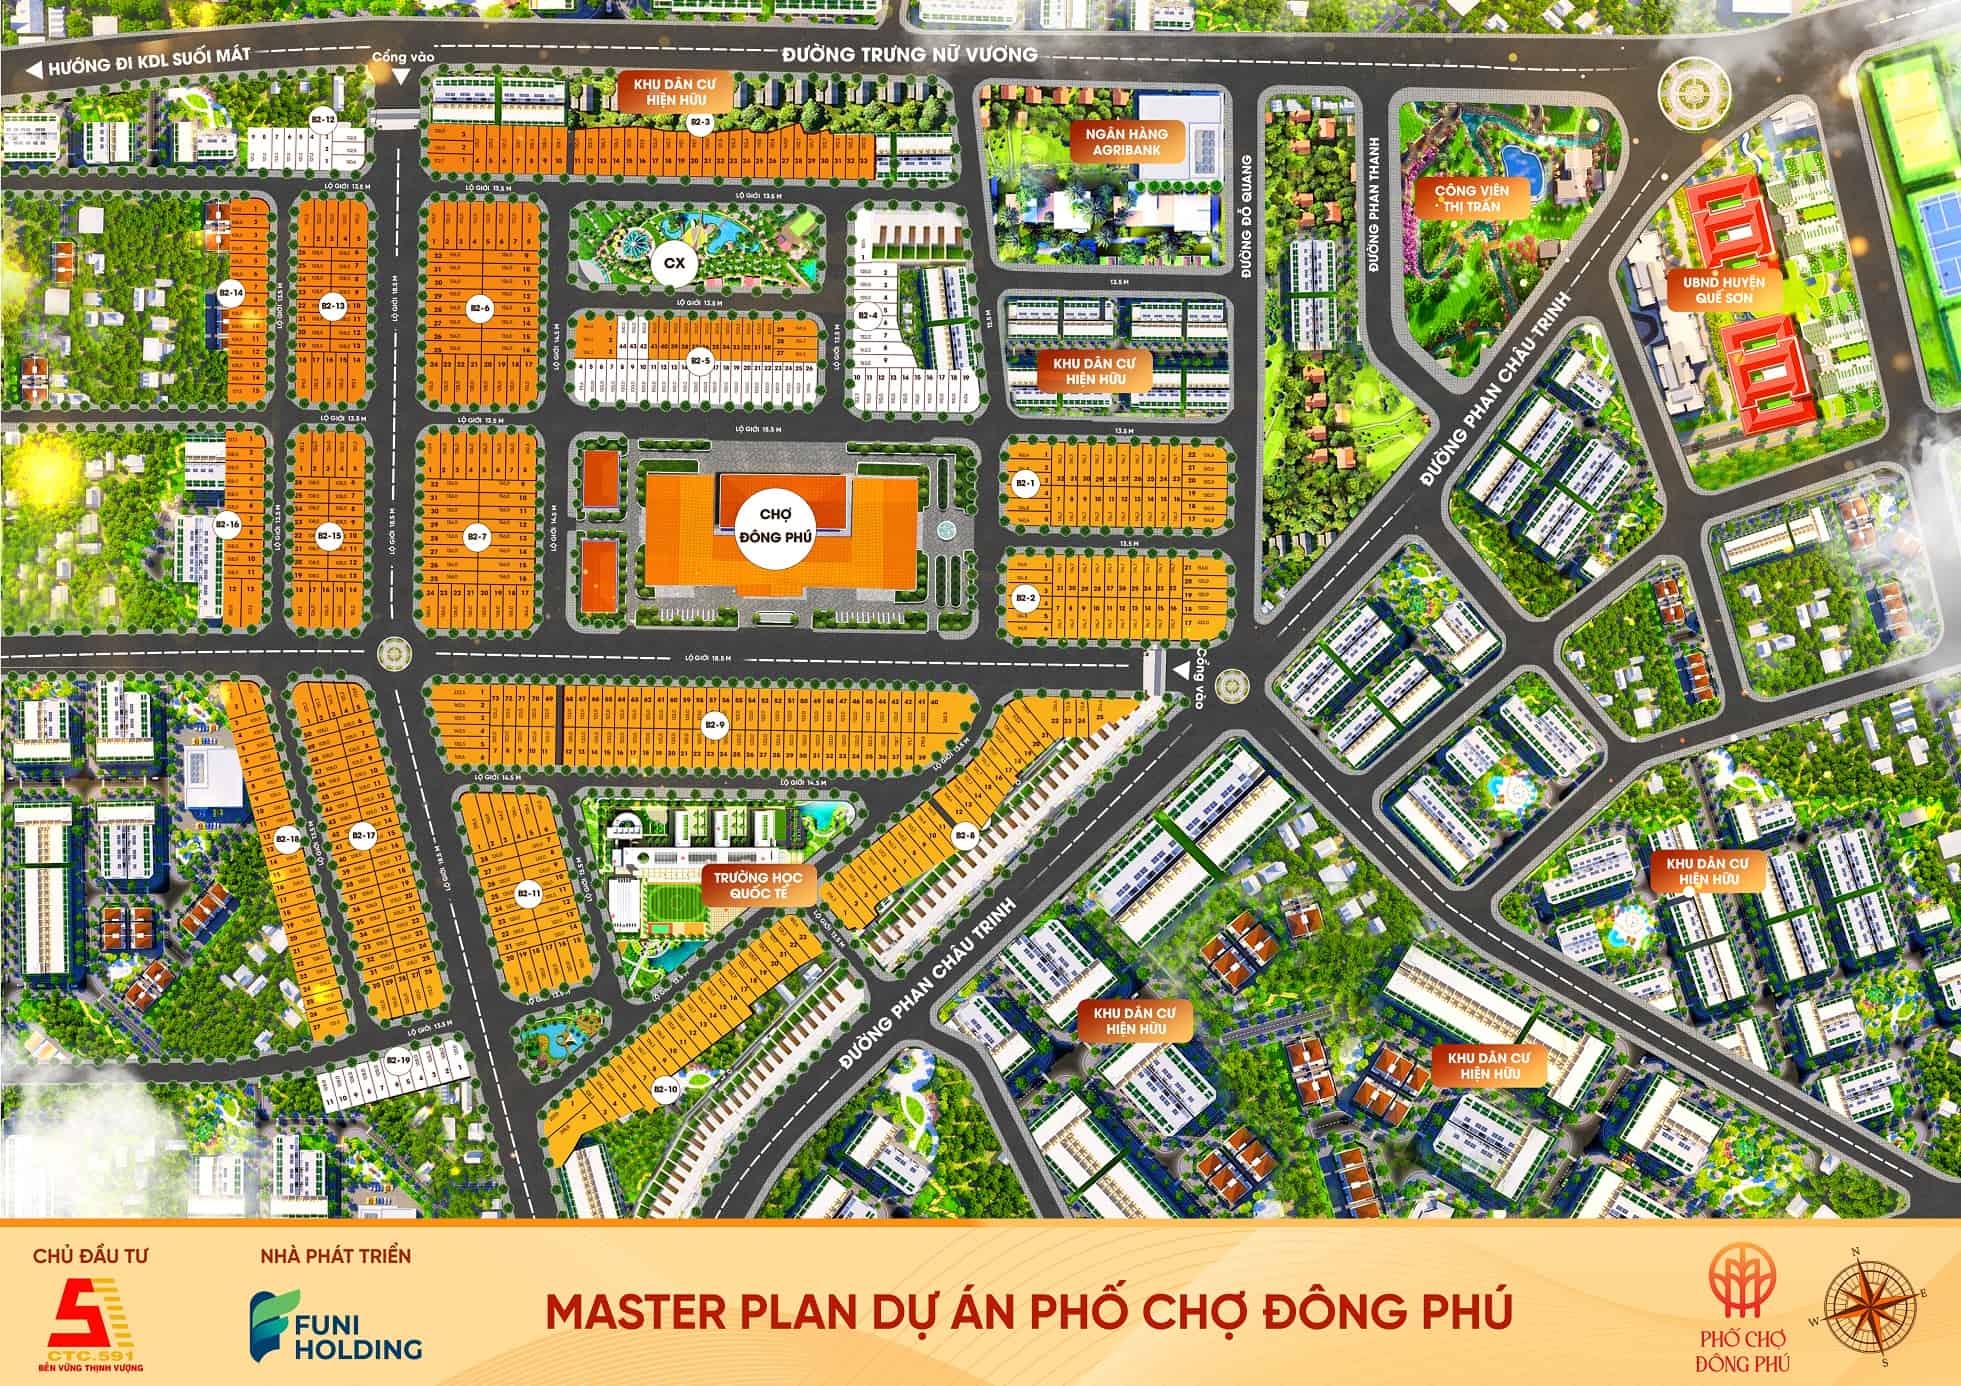 Master Plan Khu Phố Chợ Đông Phú